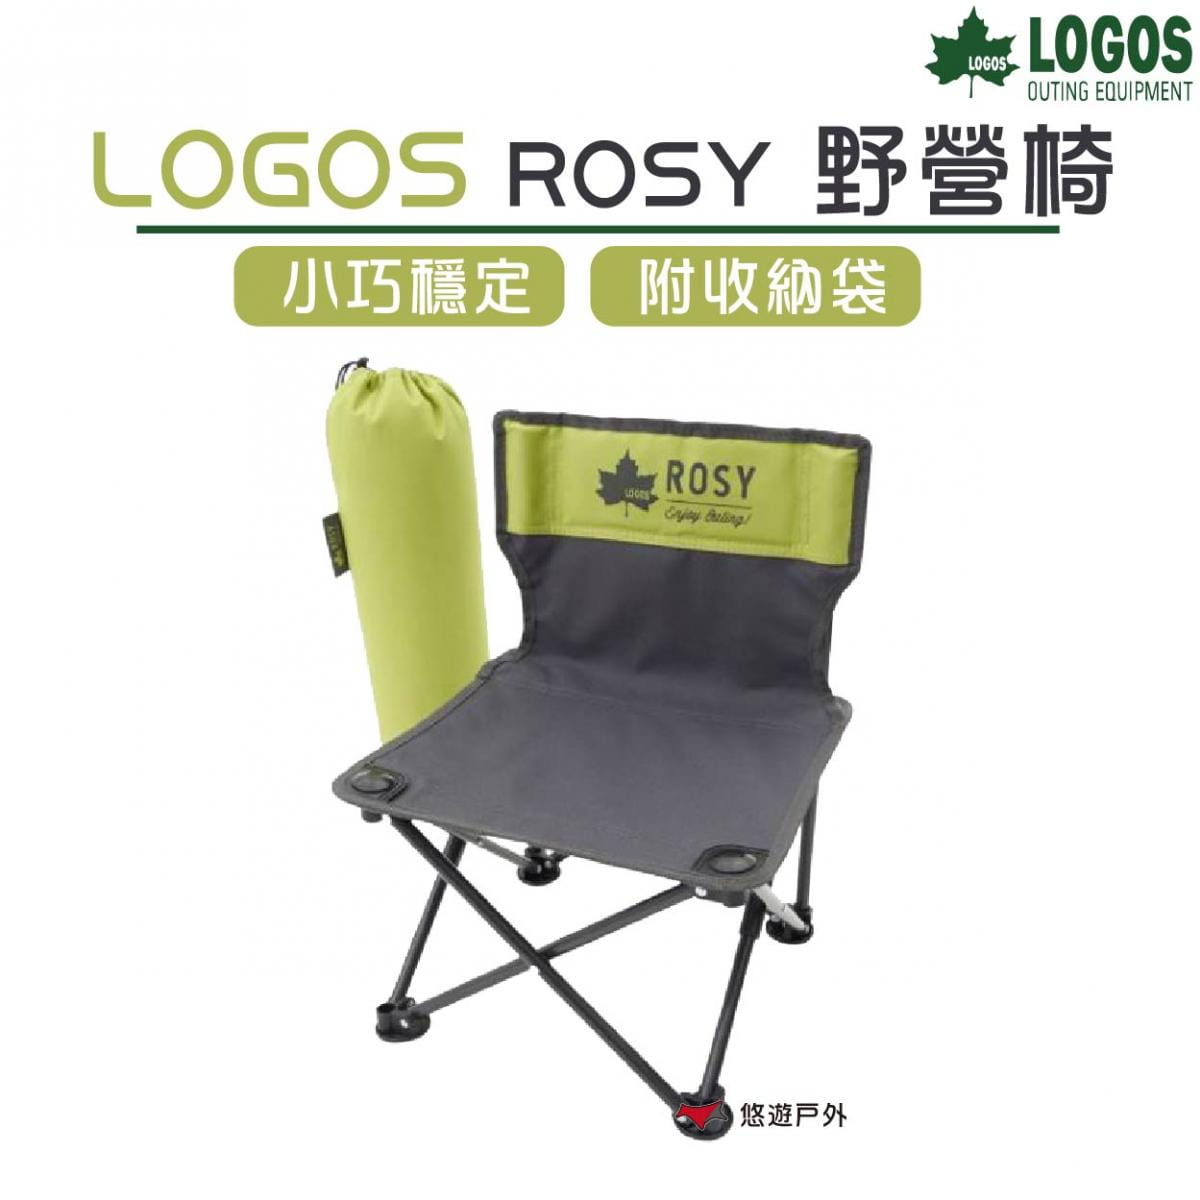 【LOGOS】ROSY野營椅 露營椅 折疊椅 低坐椅 兒童成人椅 登山 露營 戶外 悠遊戶外 0